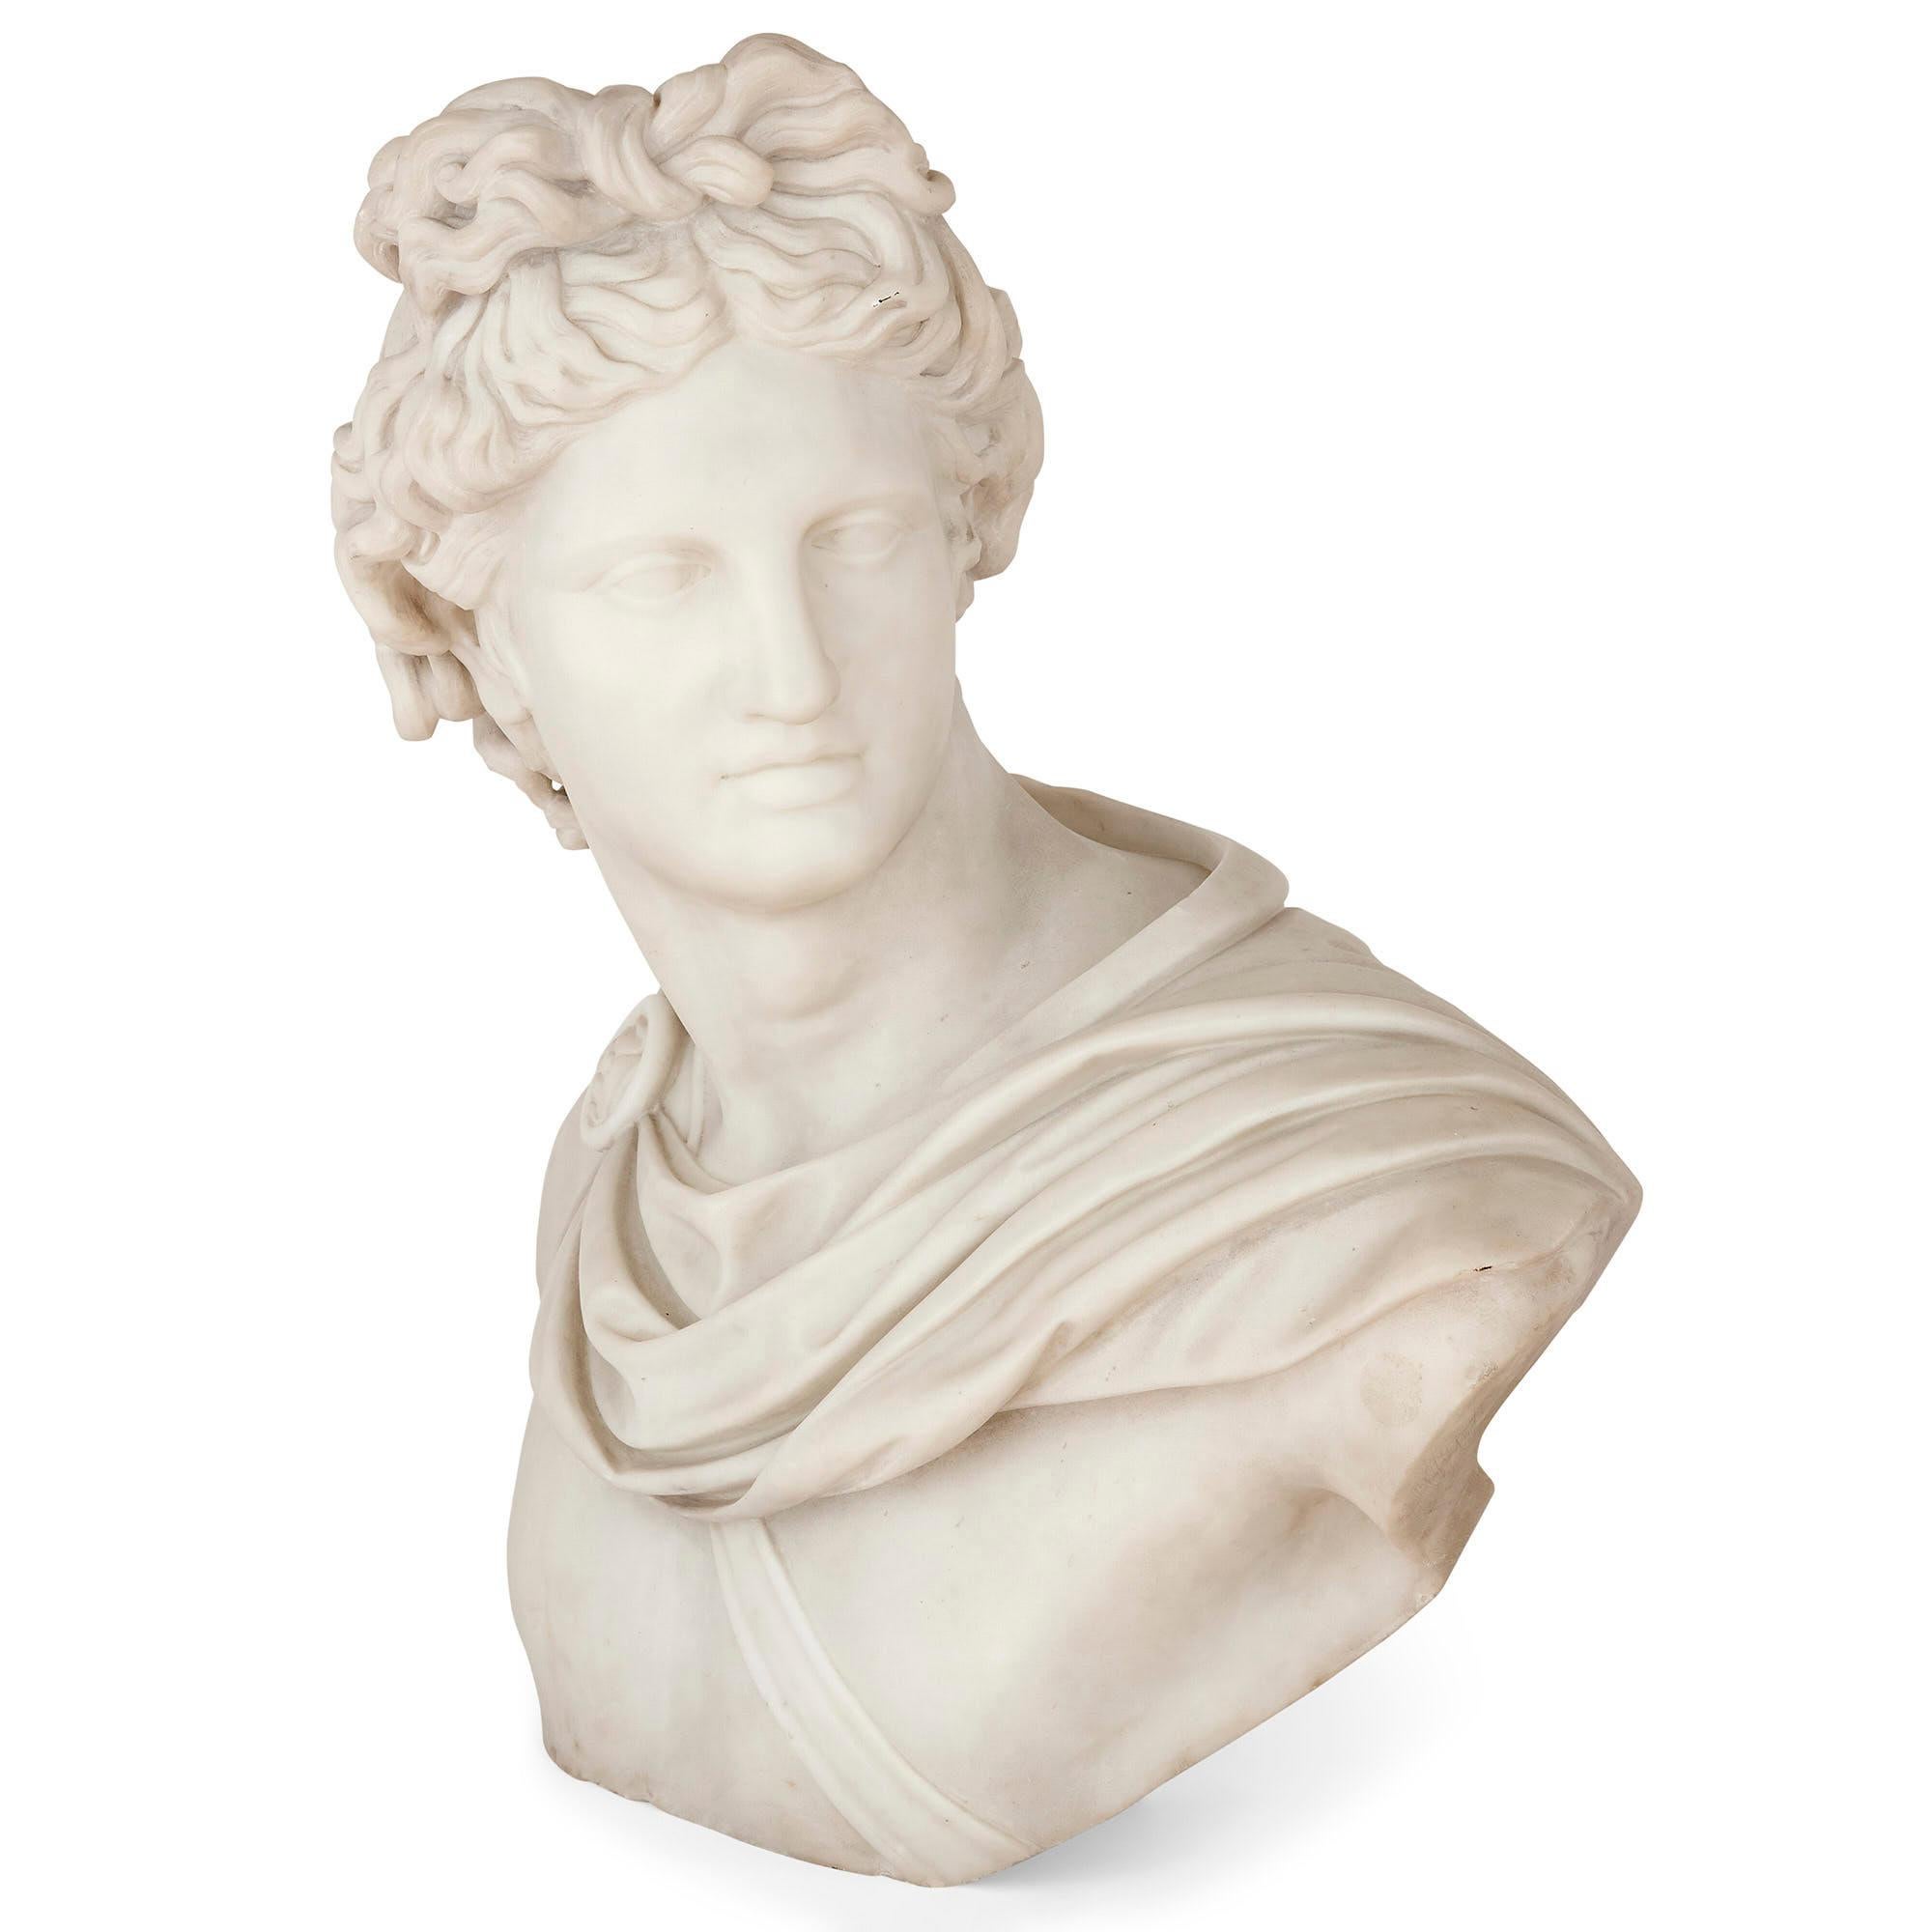 Sculpture italienne en marbre d'Apollon
Italien, 19ème siècle
Mesures : Hauteur 64 cm, largeur 61 cm, profondeur 43 cm

Ce grand et beau buste en marbre sculpté représentant Apollon est inspiré de l'ancien chef-d'œuvre romain original exposé au